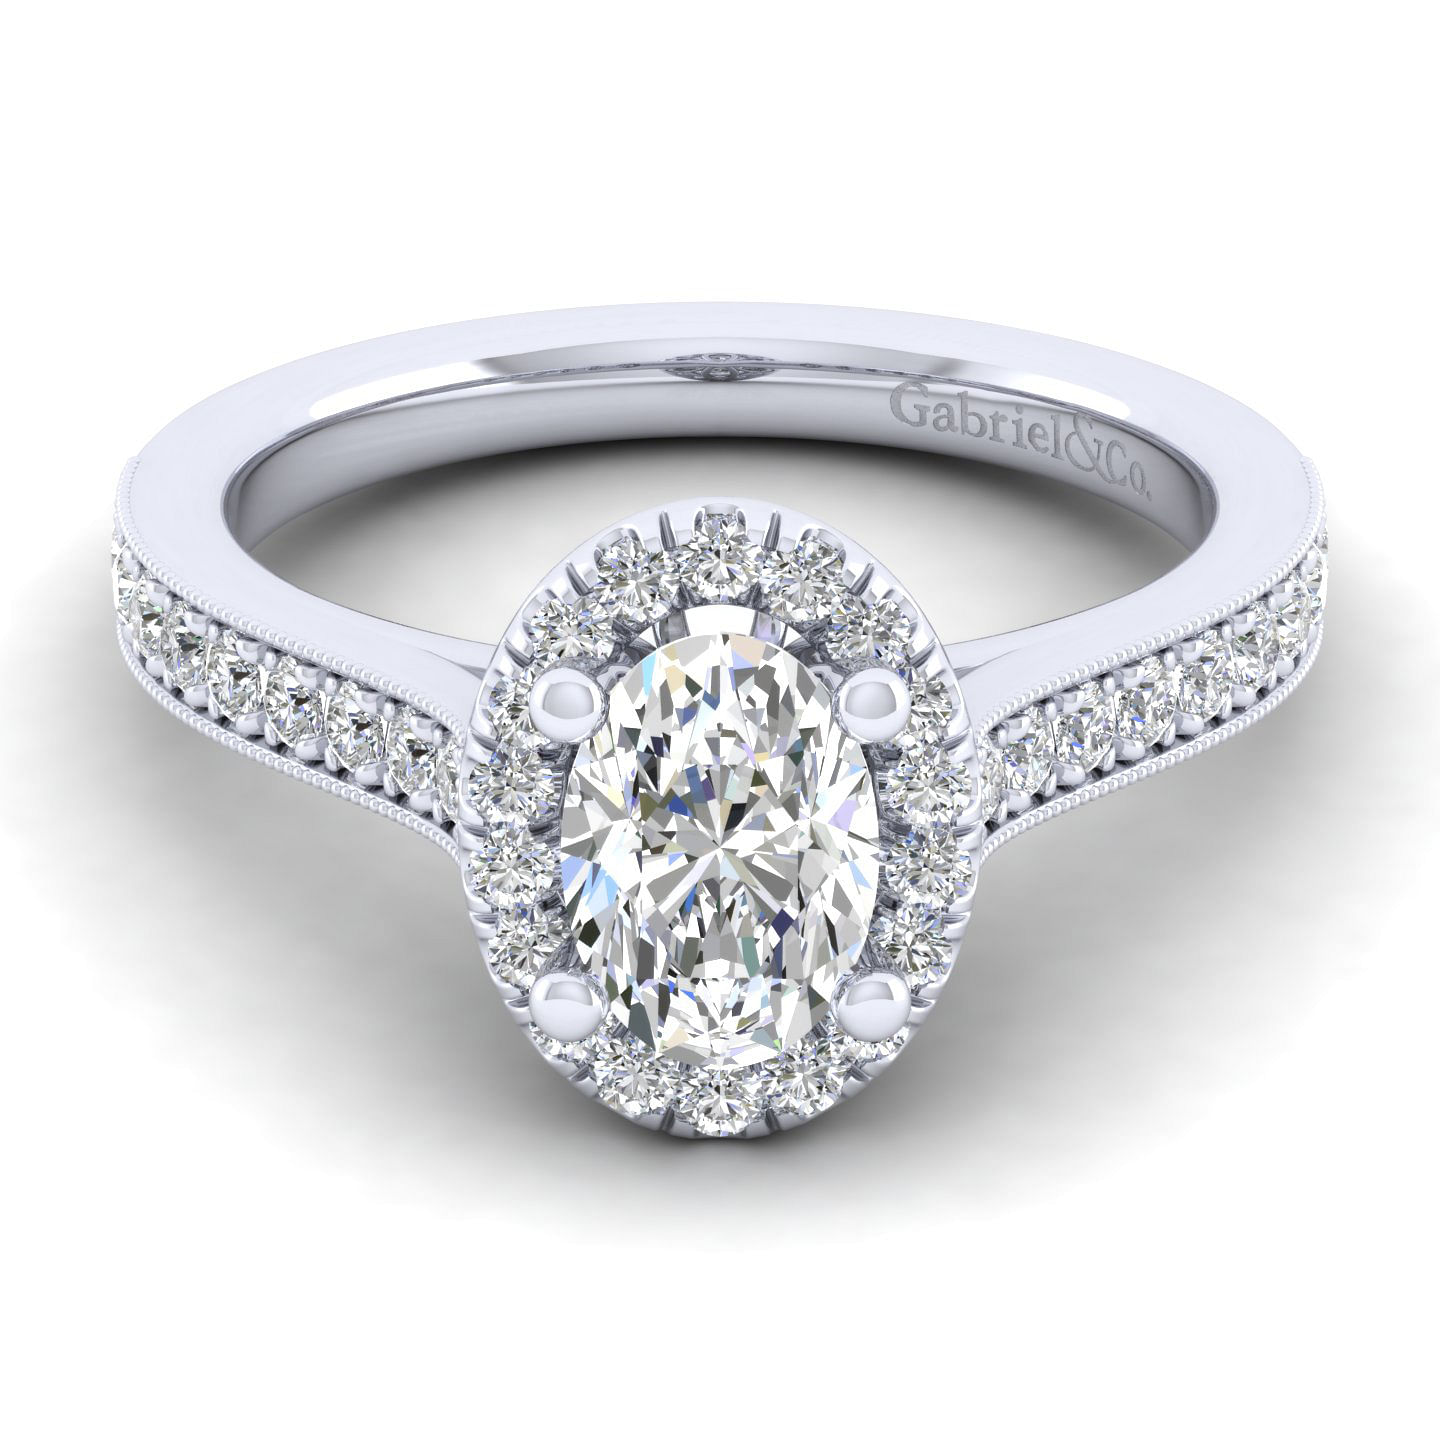 Bernadette - Vintage Inspired 14K White Gold Oval Halo Diamond Engagement Ring